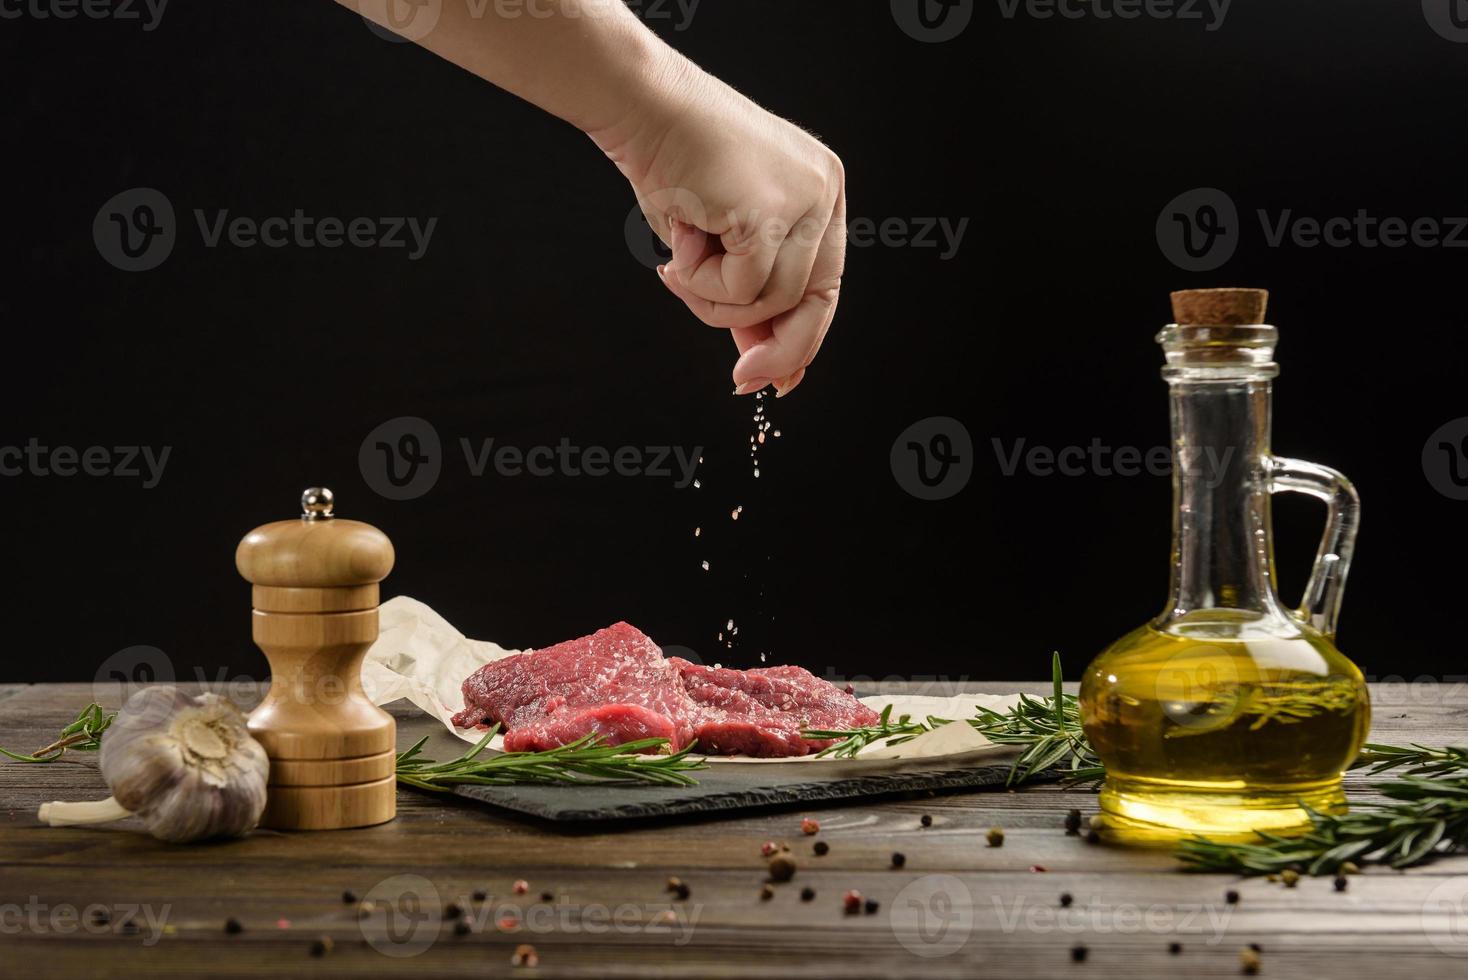 saupoudrer de sel à la main sur les steaks de bœuf photo